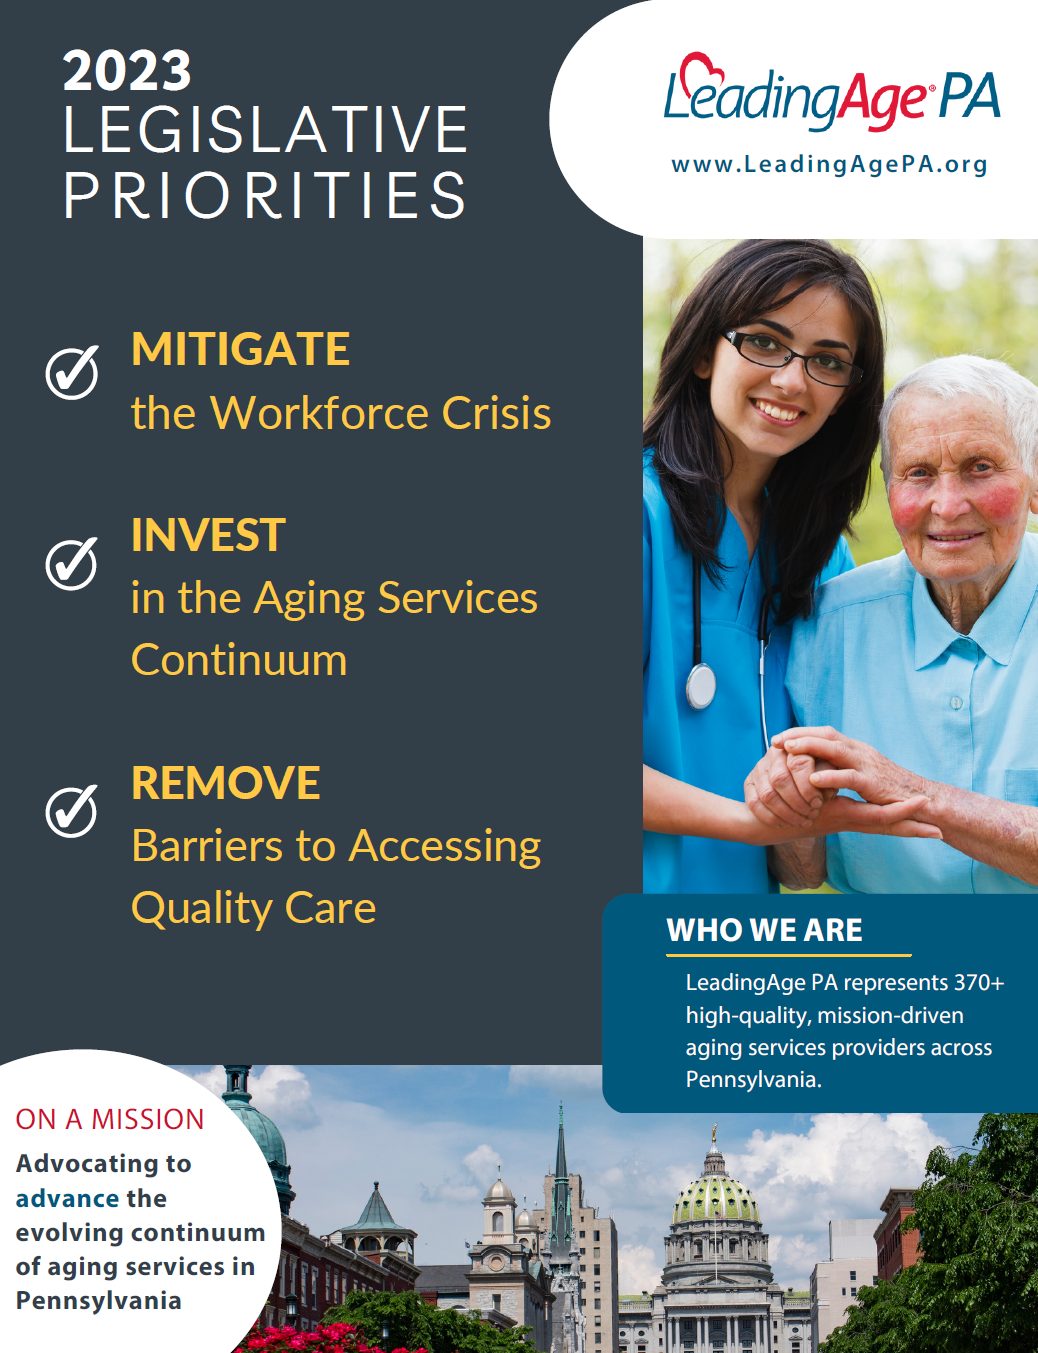 LeadingAge PA 2023 Legislative Priorities